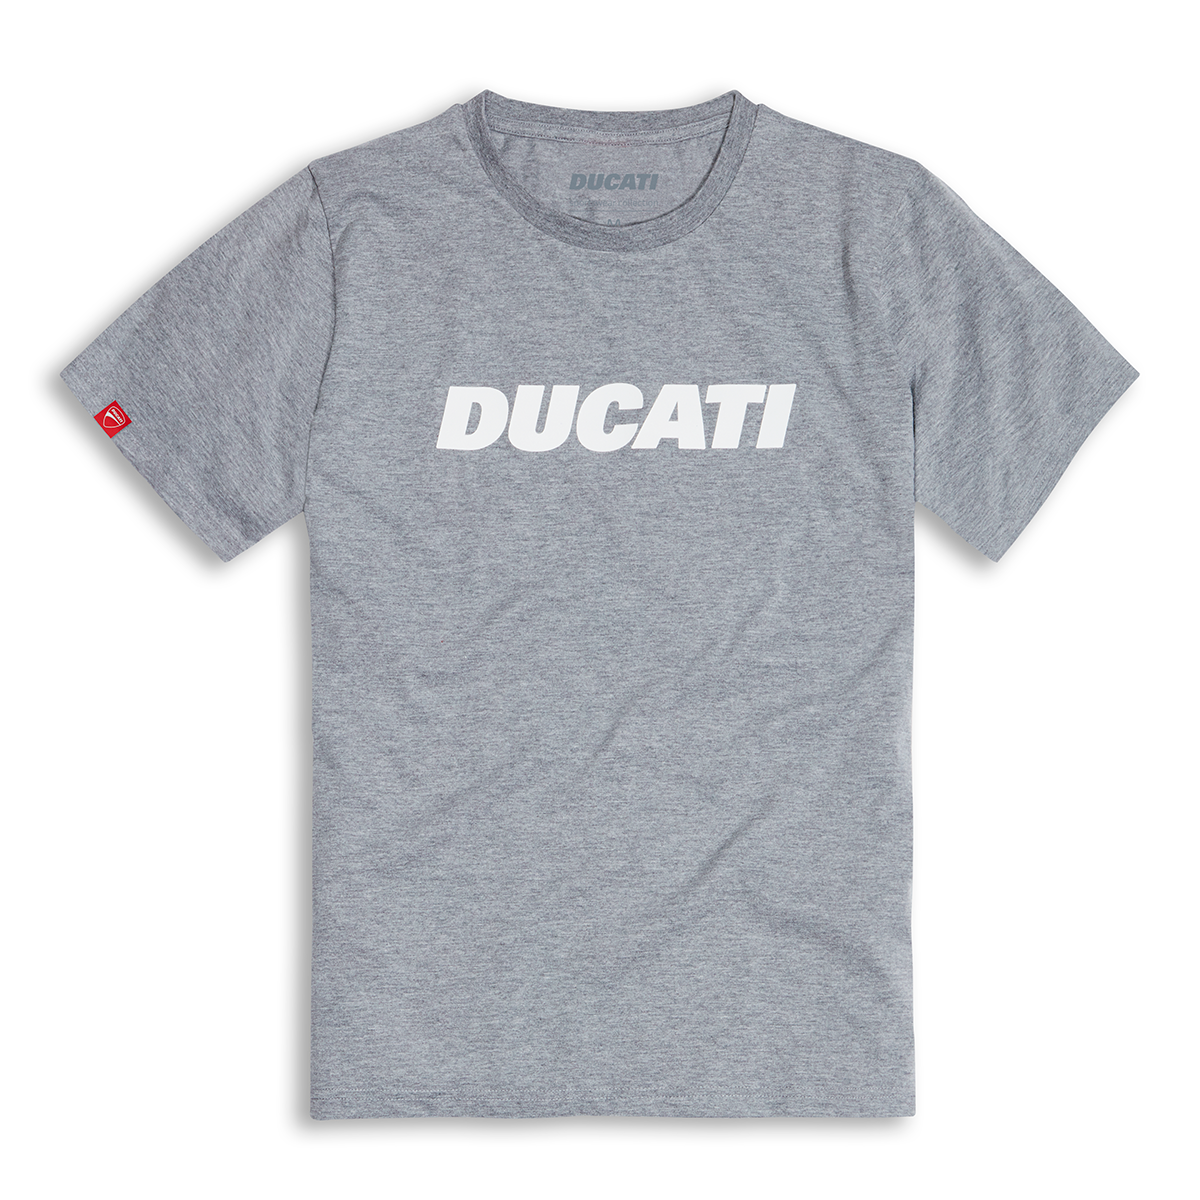 Ducati Ducatiana 2.0 Men's Tee